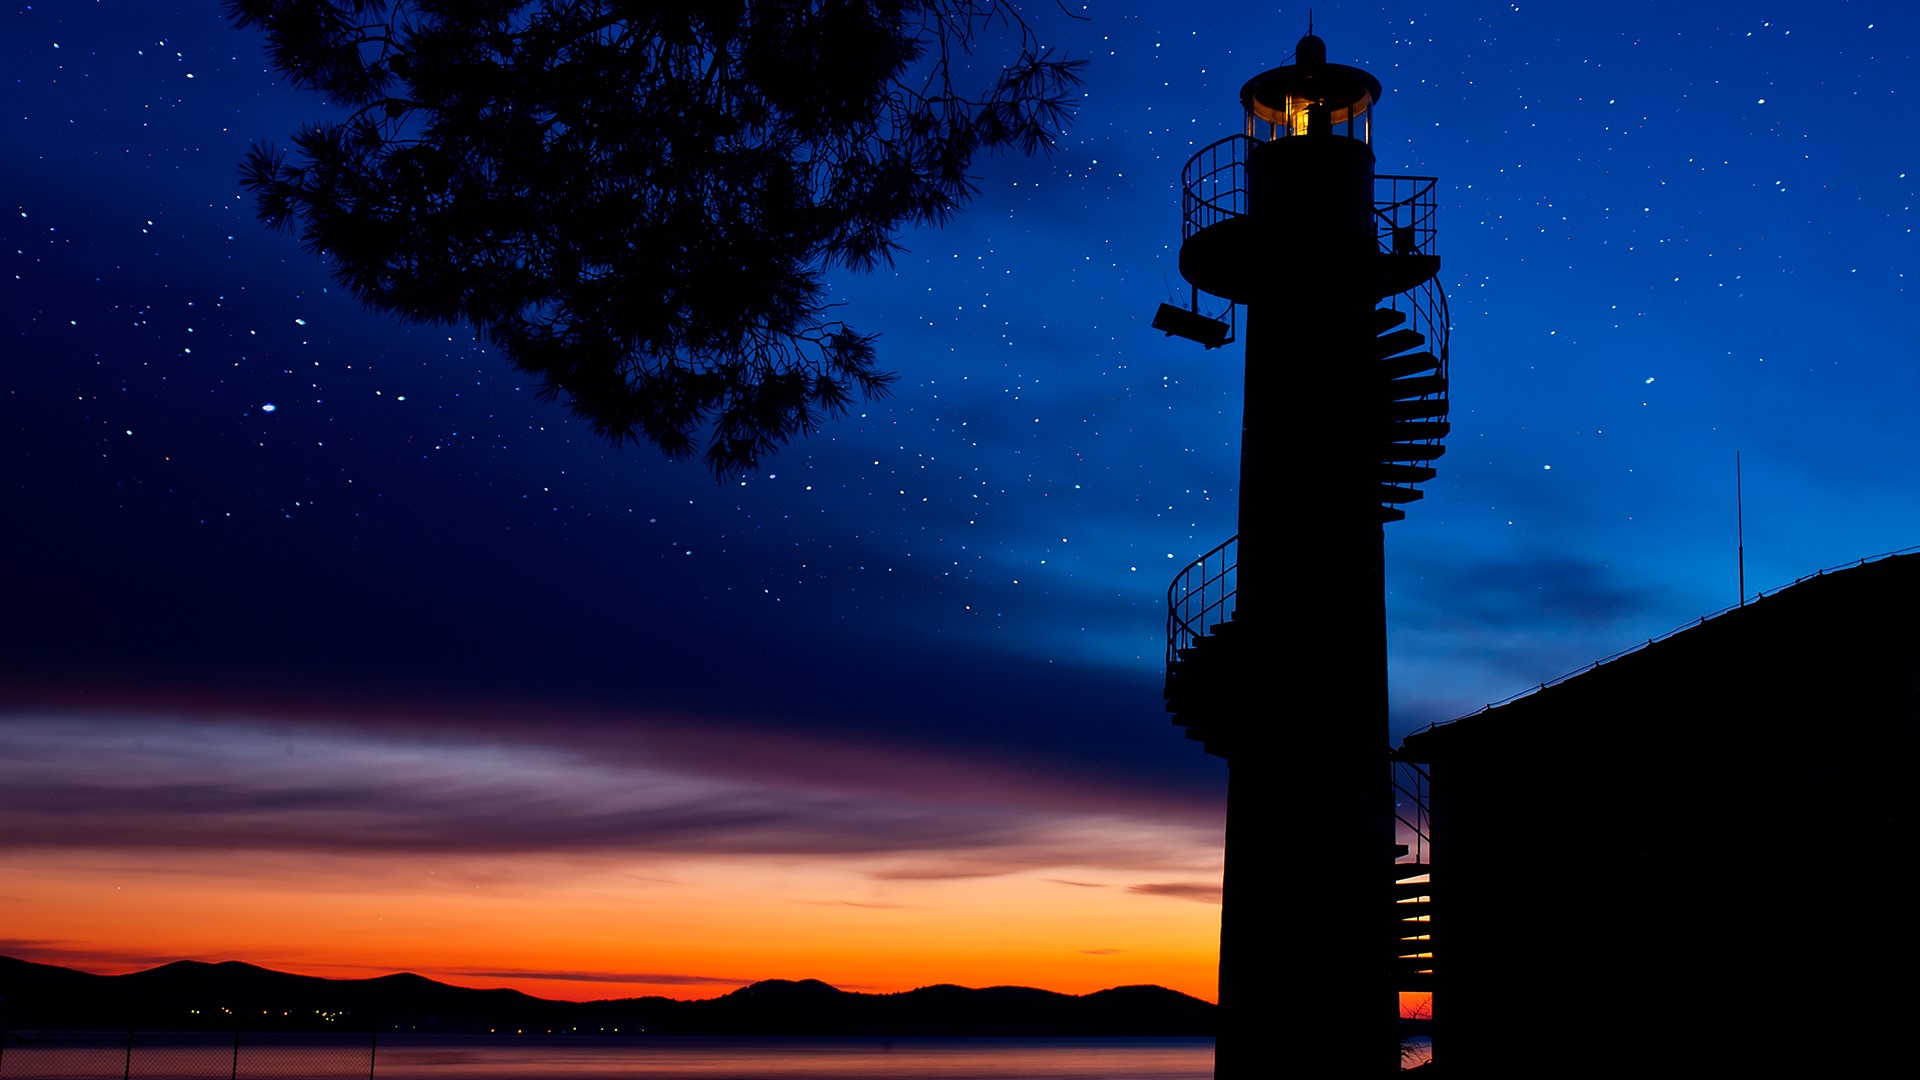 Oštri Rat Lighthouse at sunset, Zadar, Croatia | Windows Spotlight Images